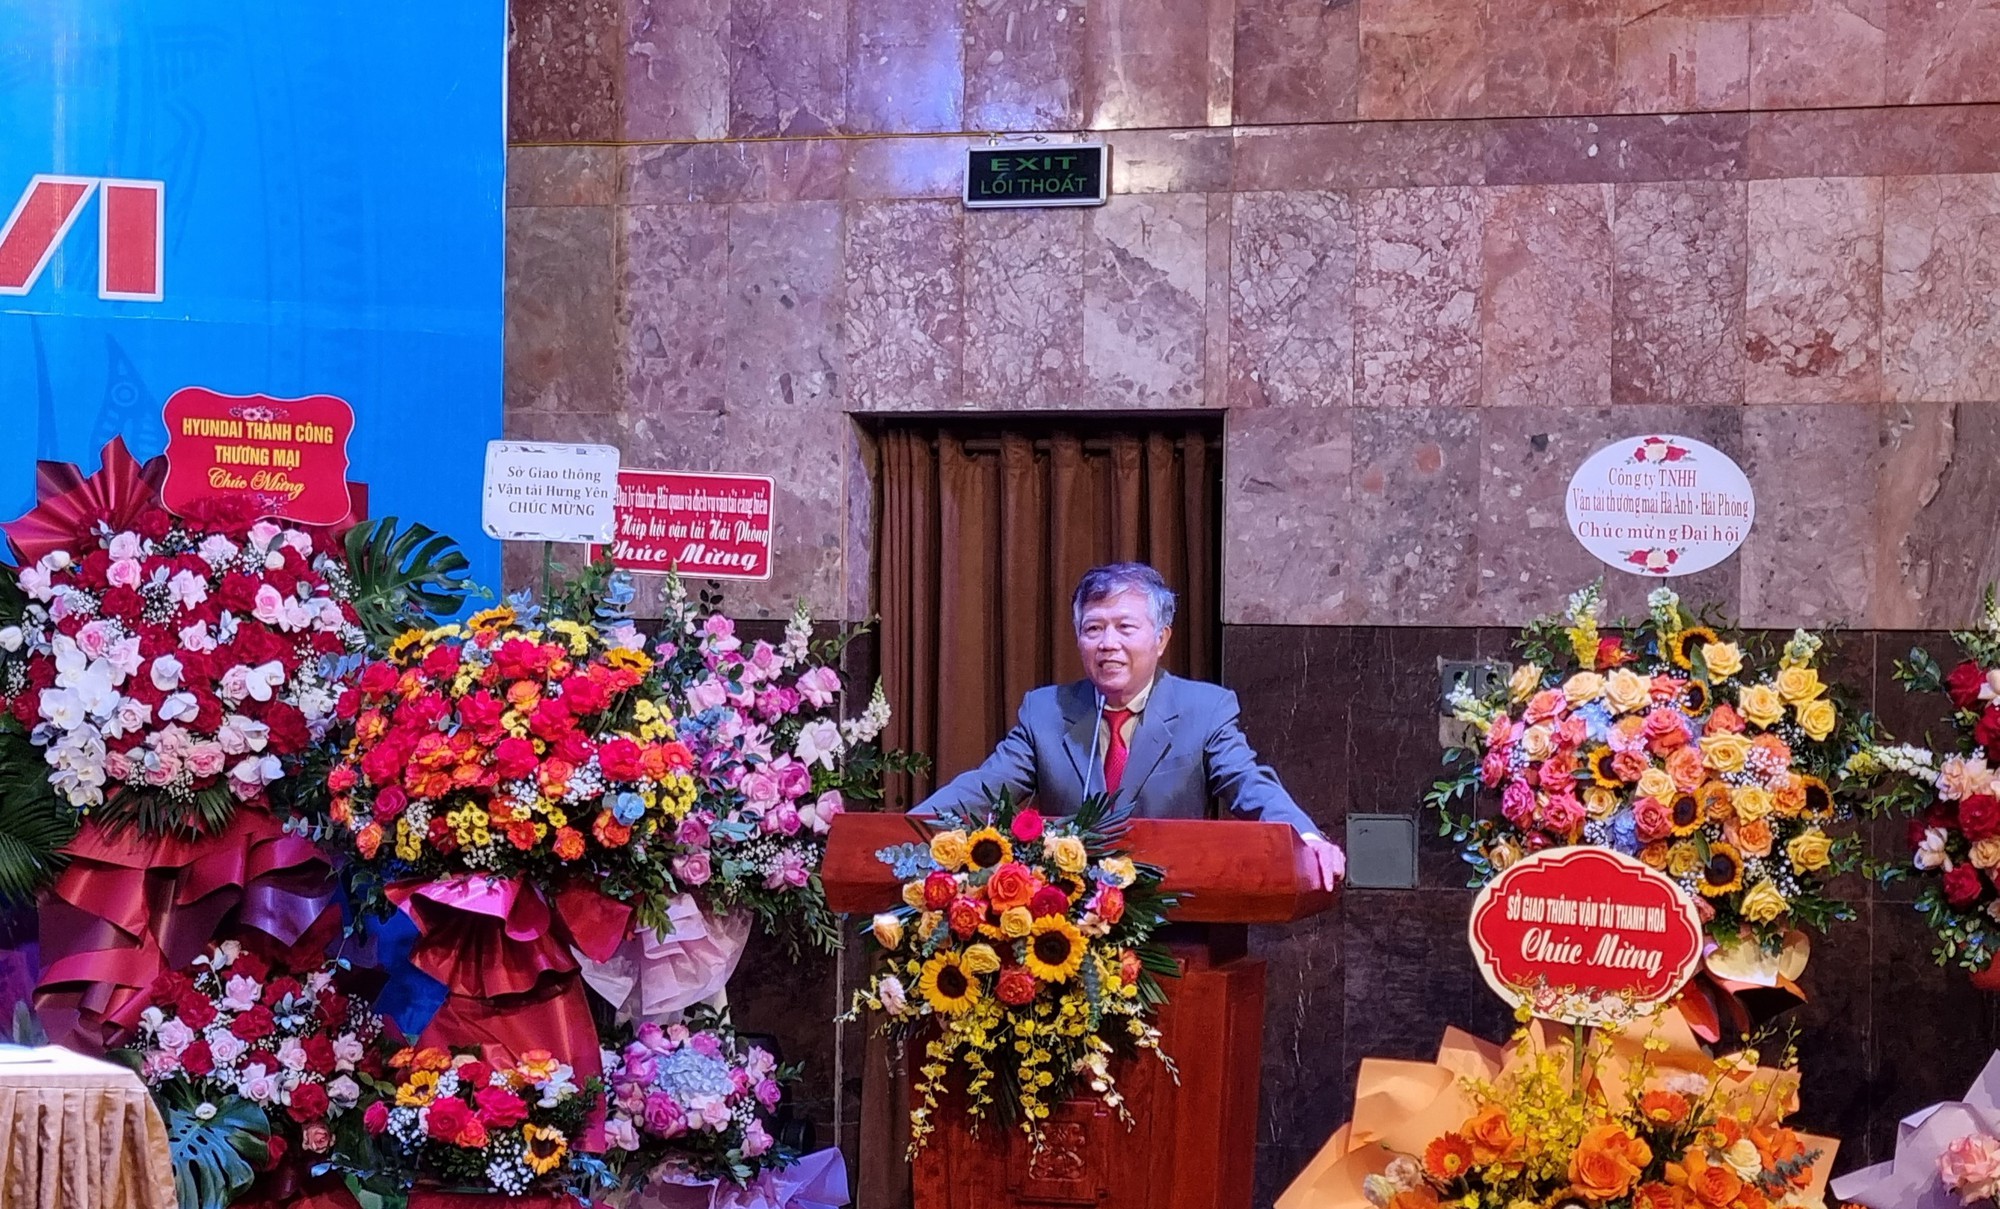 Ông Nguyễn Văn Quyền tiếp tục giữ chức Chủ tịch VATA khóa VI - Ảnh 1.